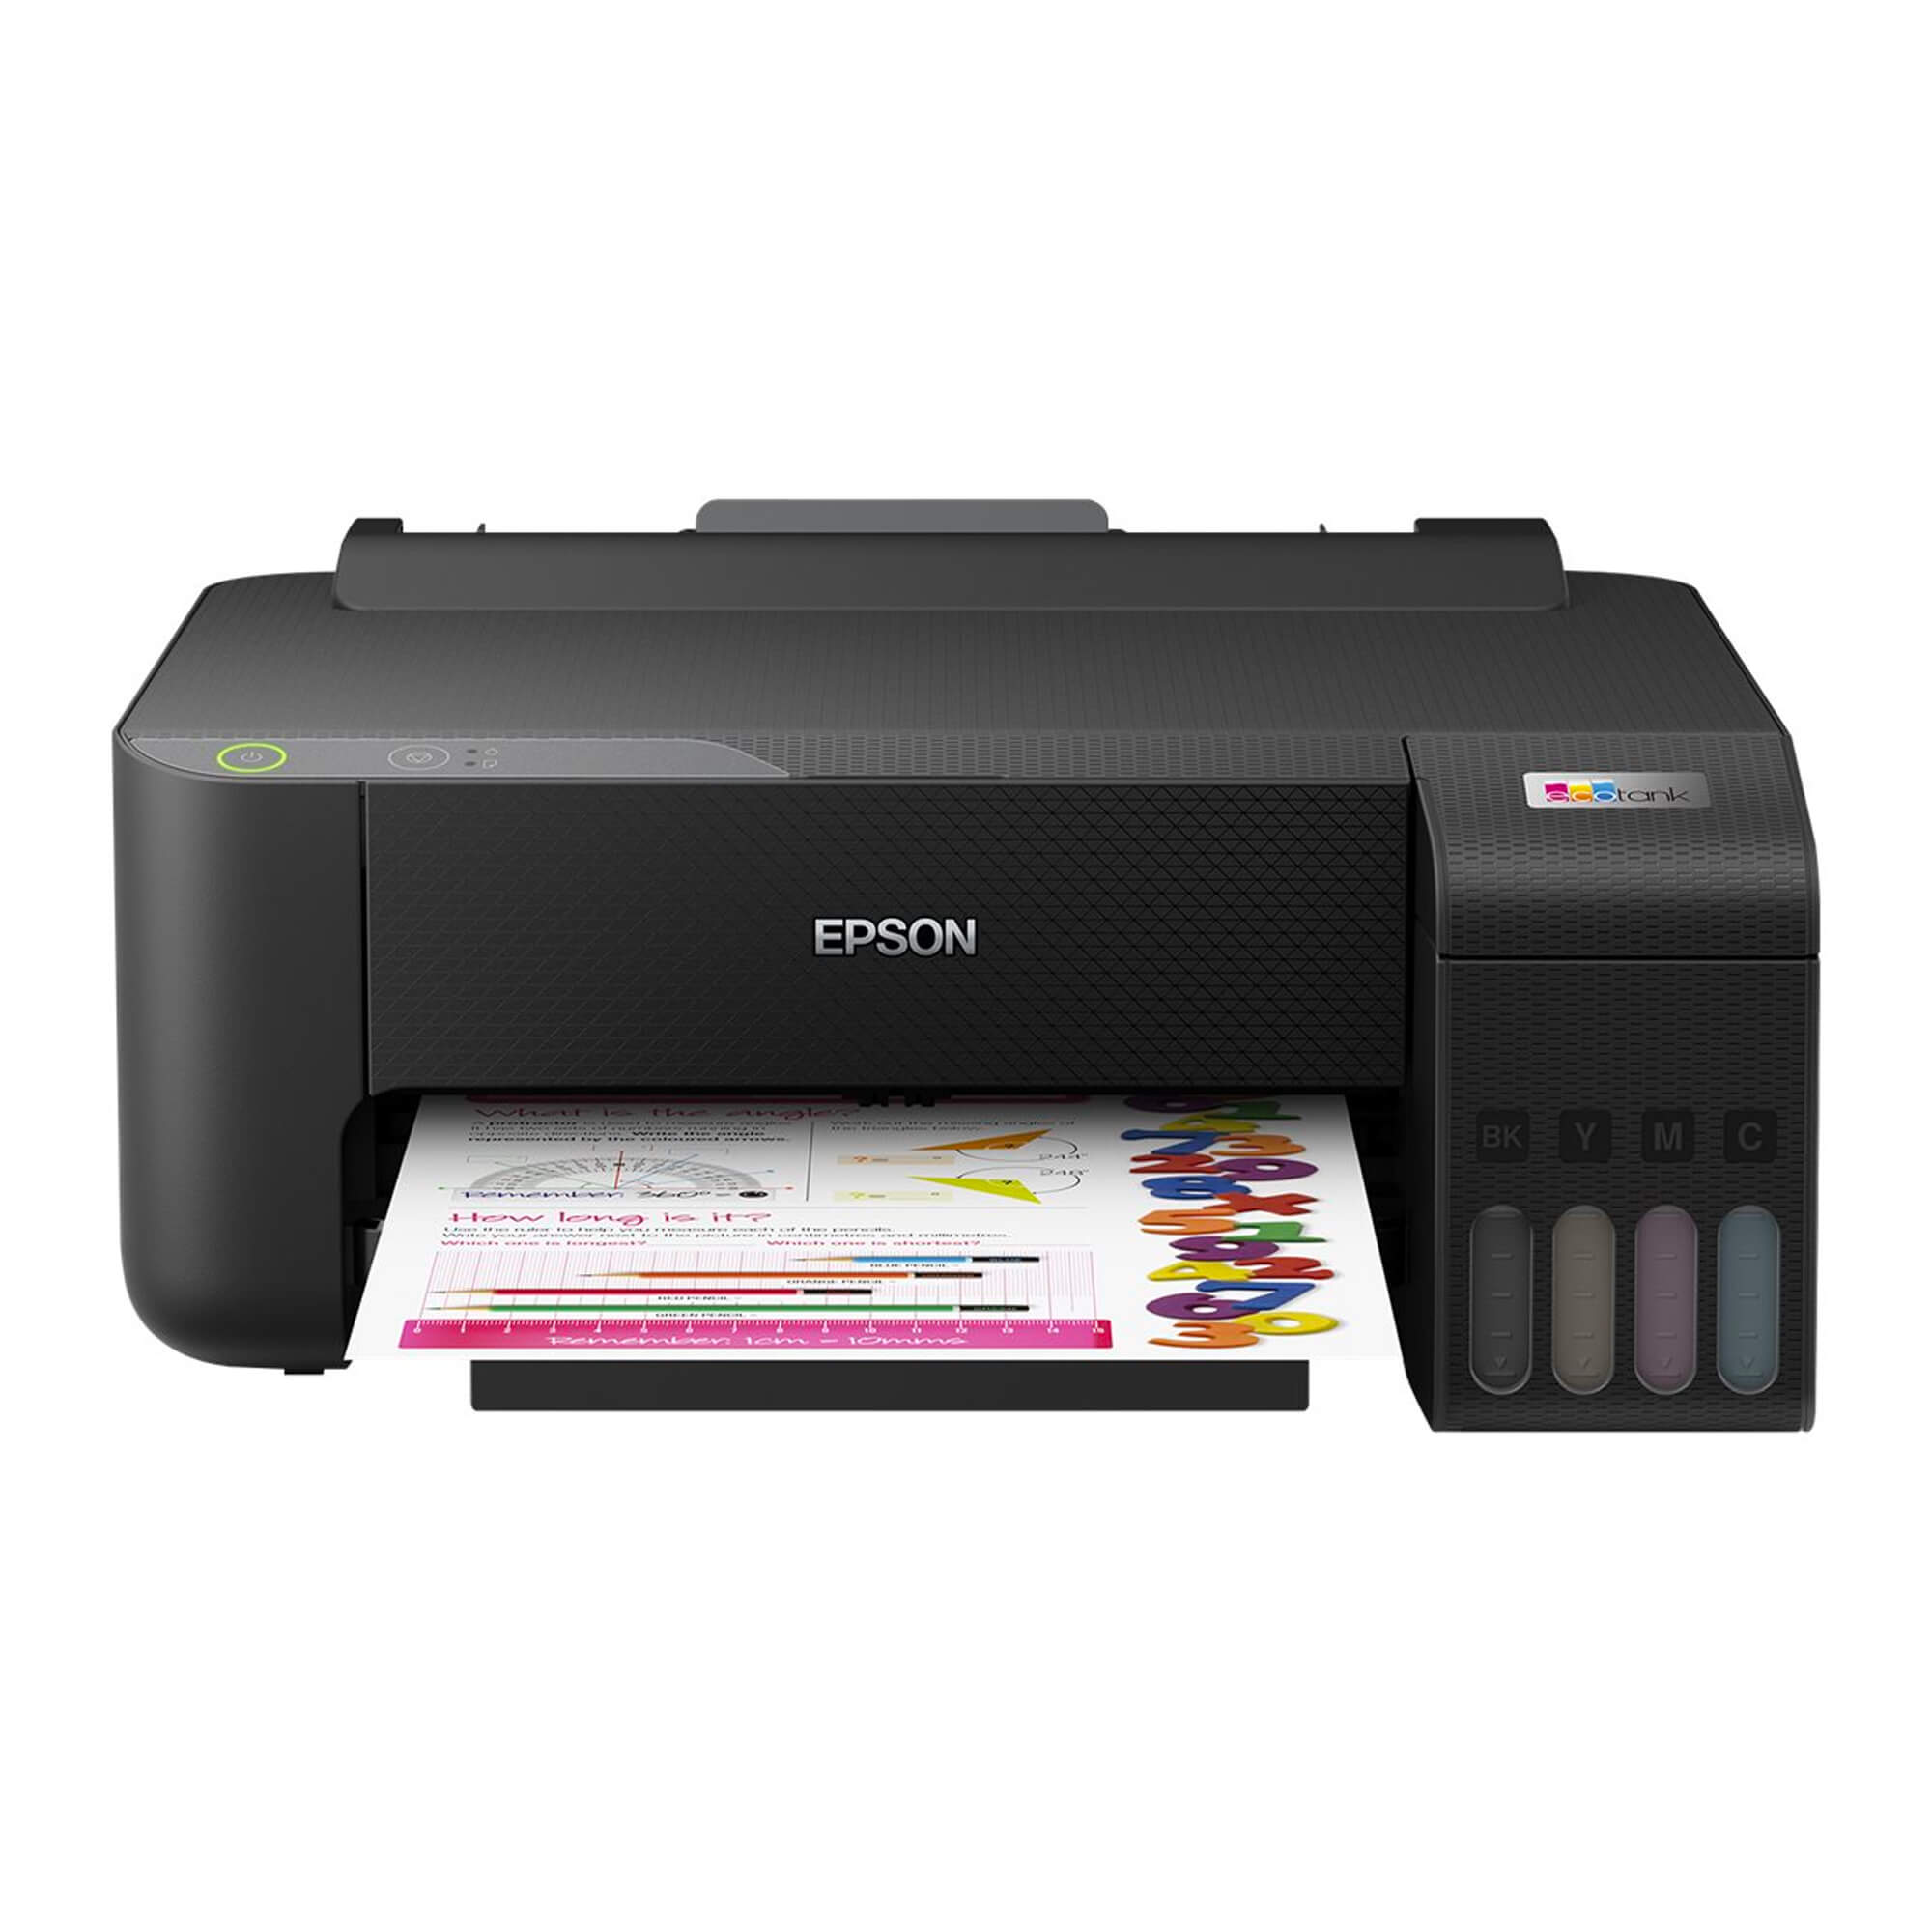 Tamo sažetak Ande  Epson EcoTank L1210, Printer, U boji, Ink-jet, A4, 5760 x 1440 dpi, do 10  spm,